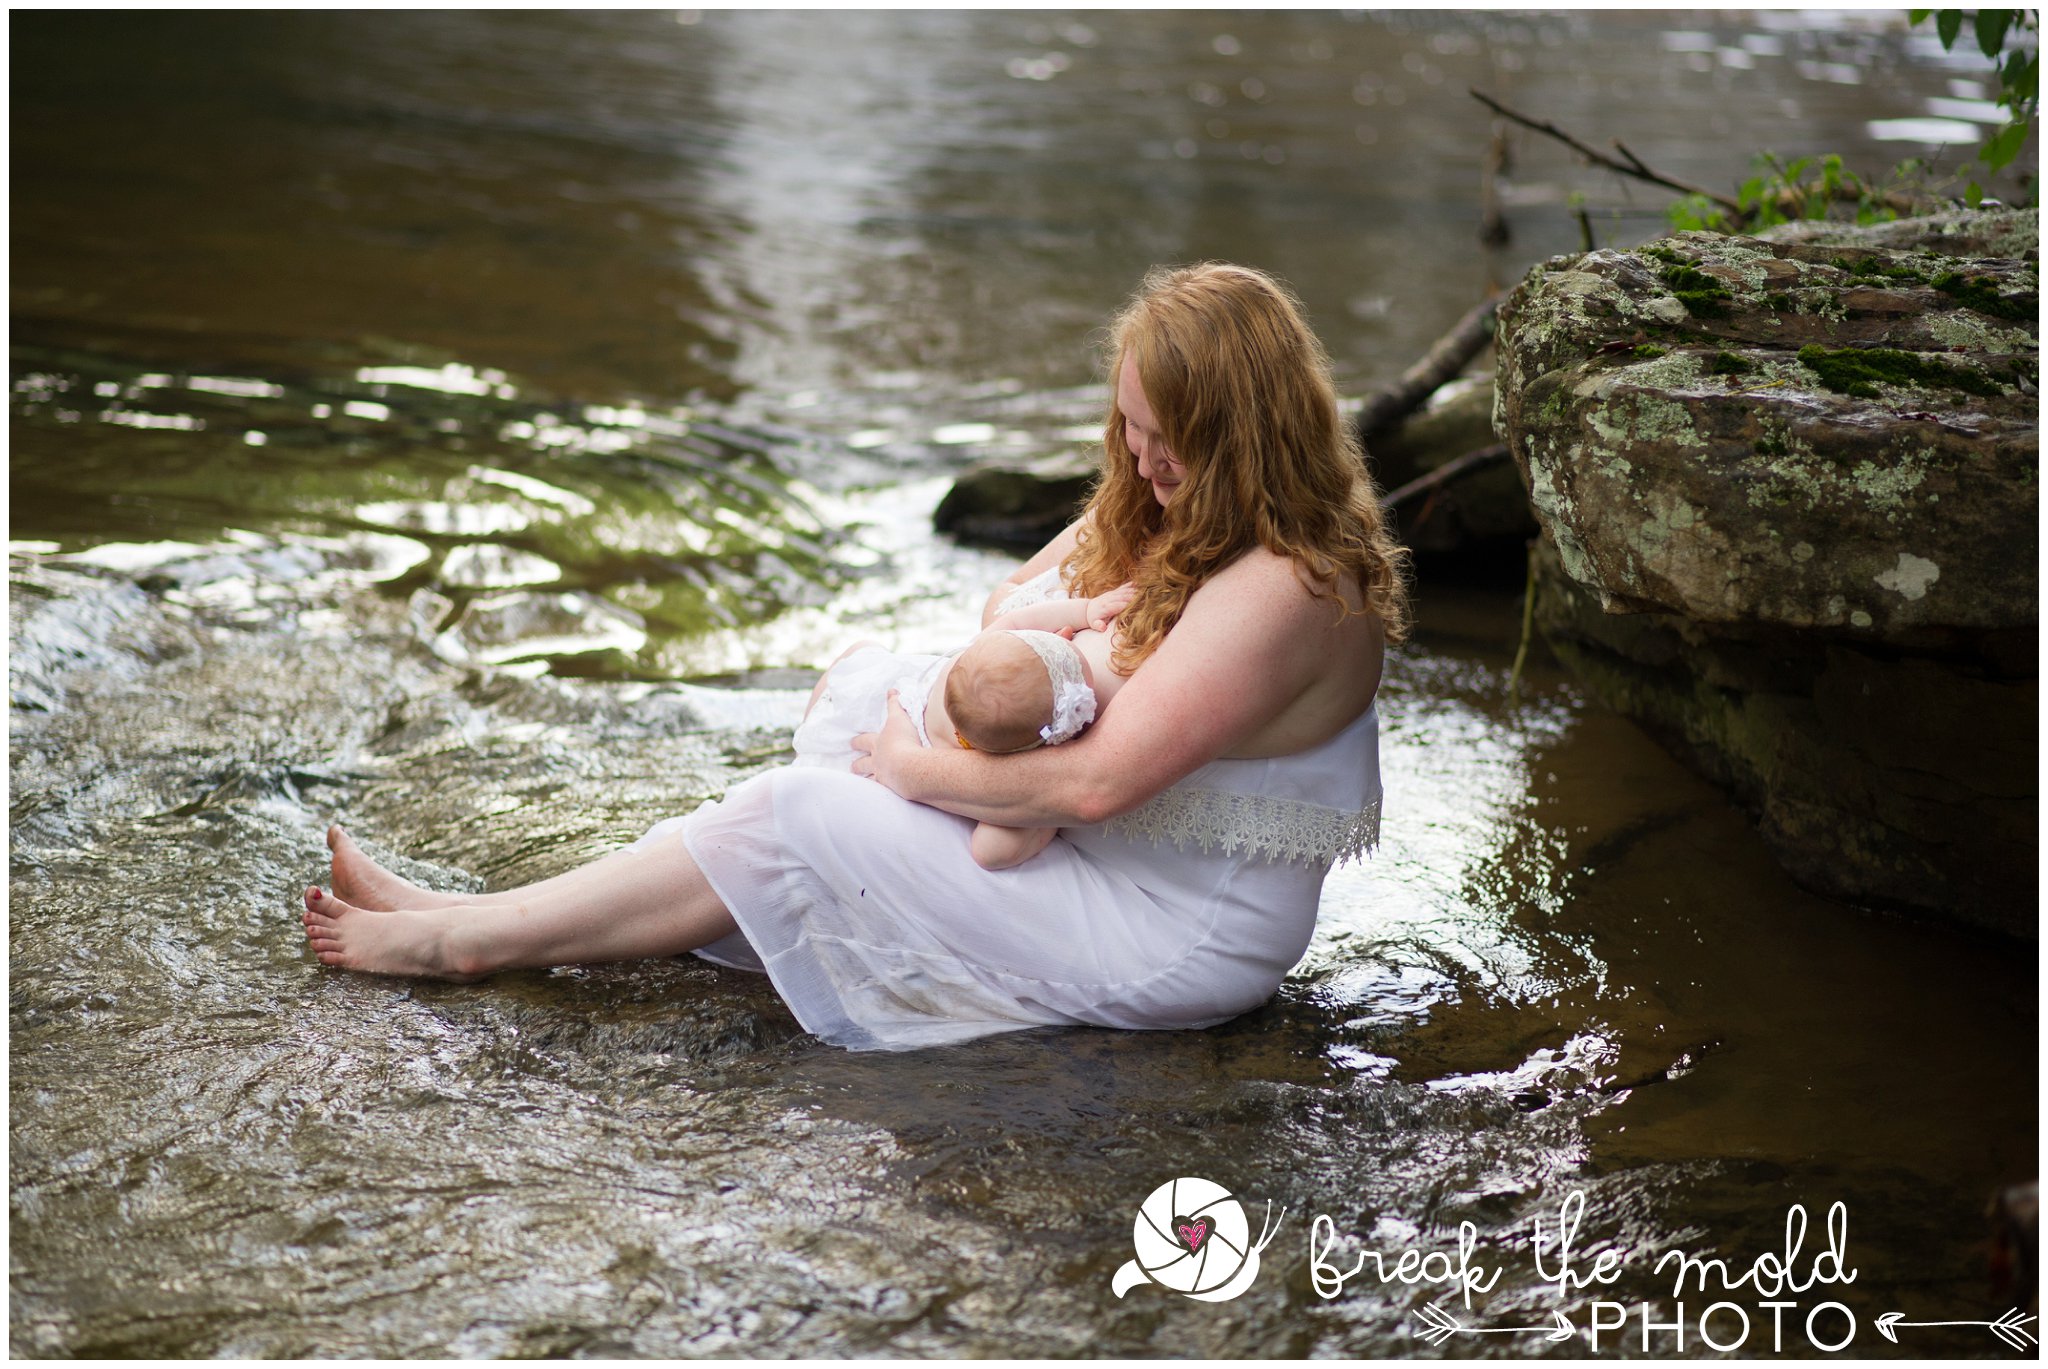 break-the-mold-photo-nursing-mothers-waterfall-women-celebrate-beauty_5441.jpg